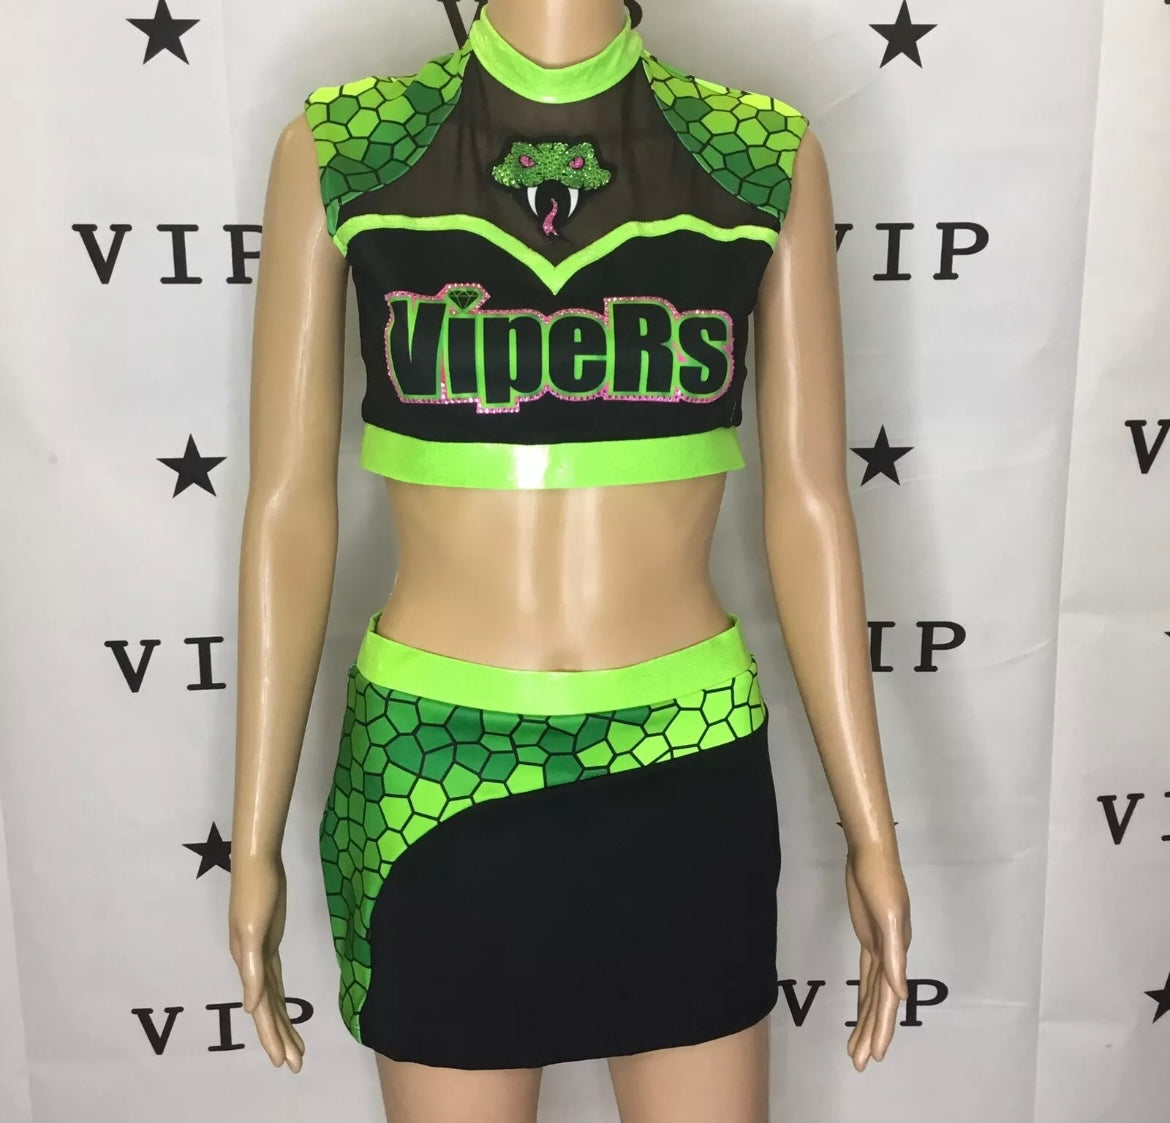 Vipers cheer uniform